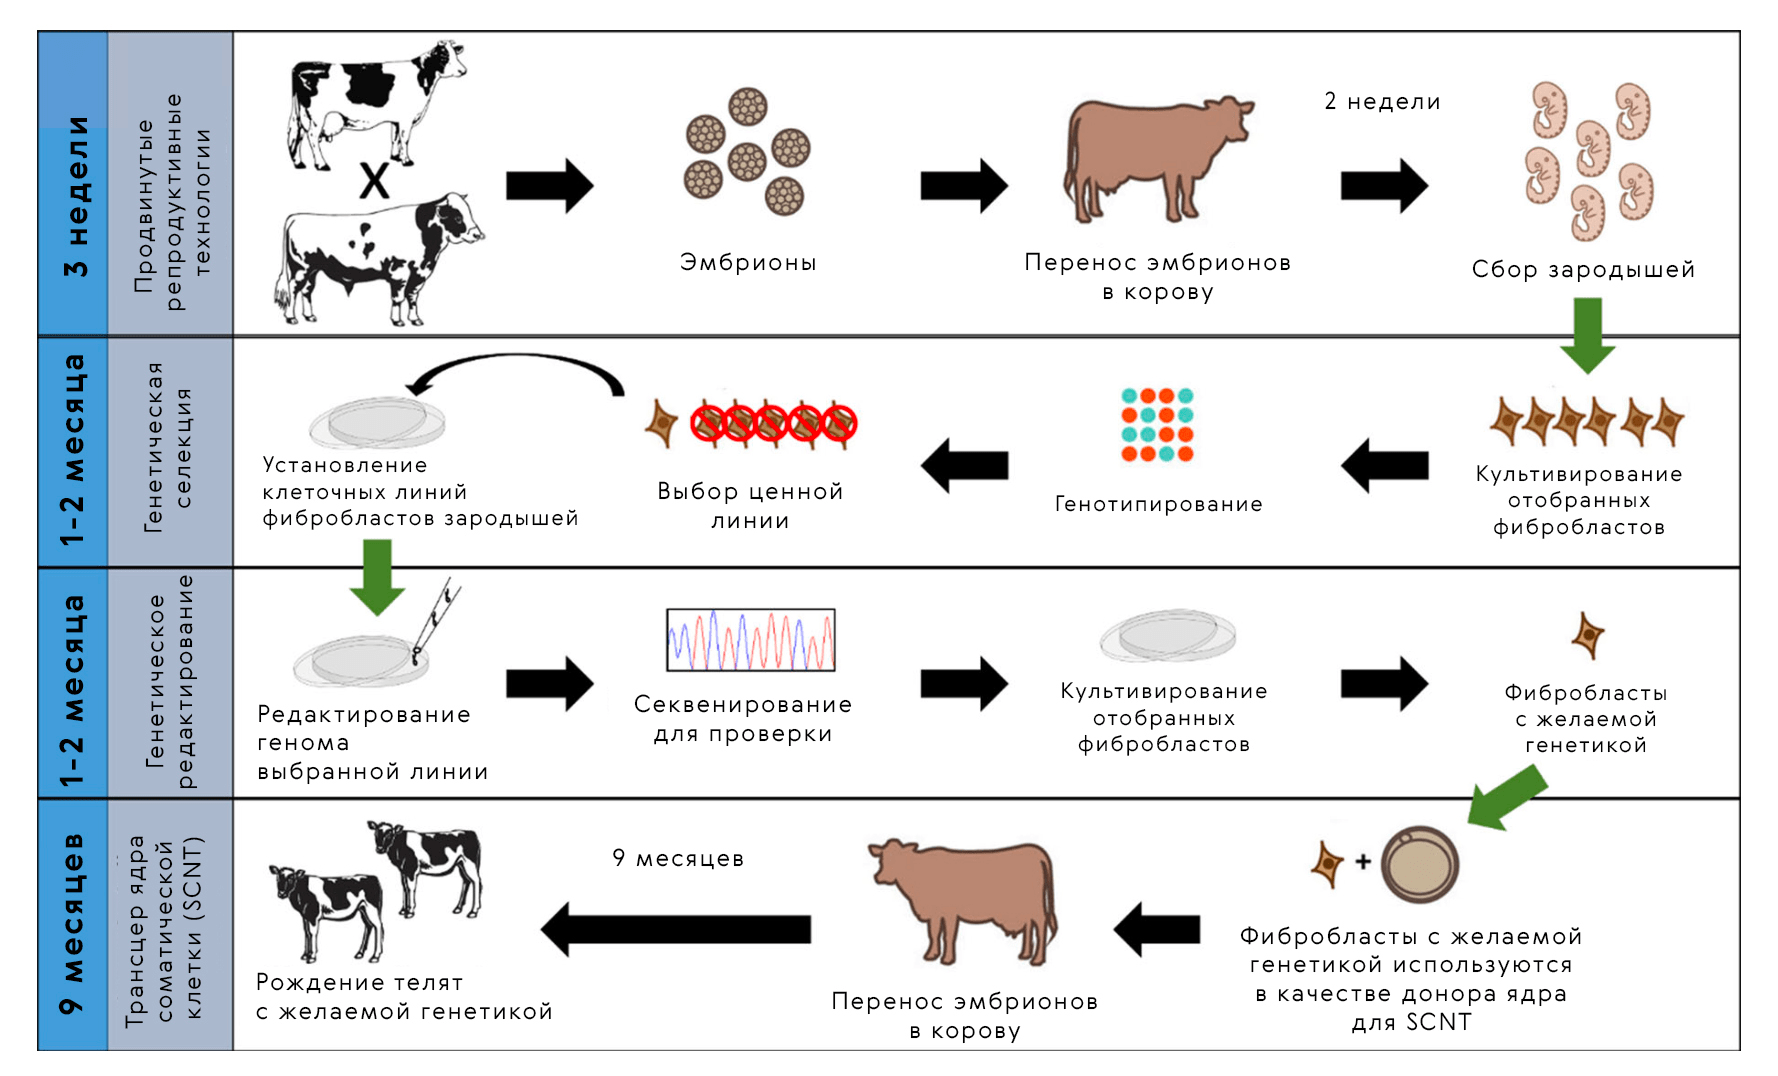 Для выведения животных с желаемыми качествами применяется комбинация методов: трансфер эмбрионов, генотипирование и геномное редактирование